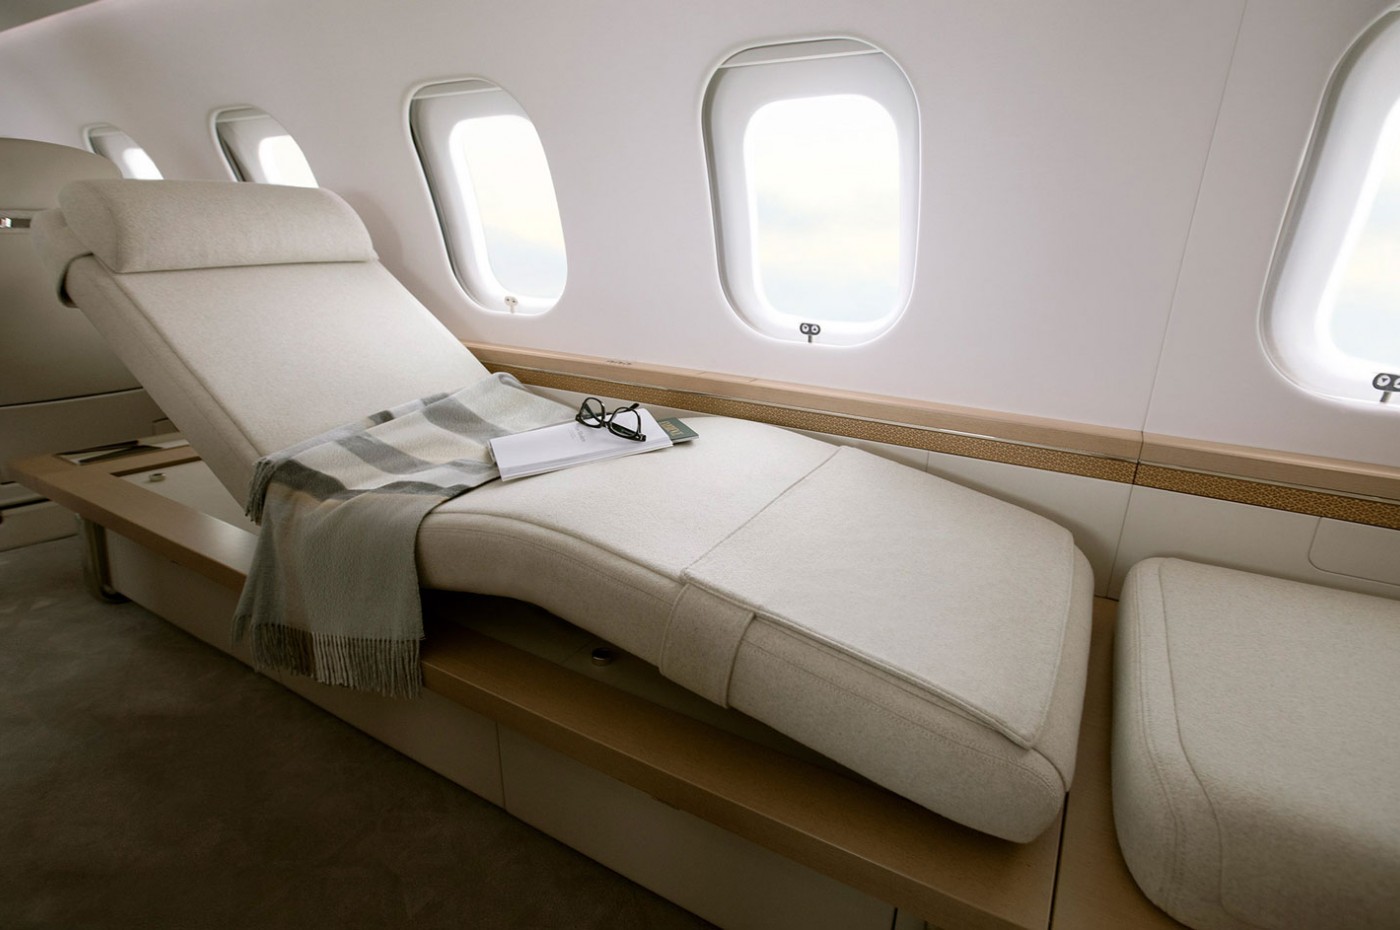 La chaise méridienne Nuage de l’avion Global 6500